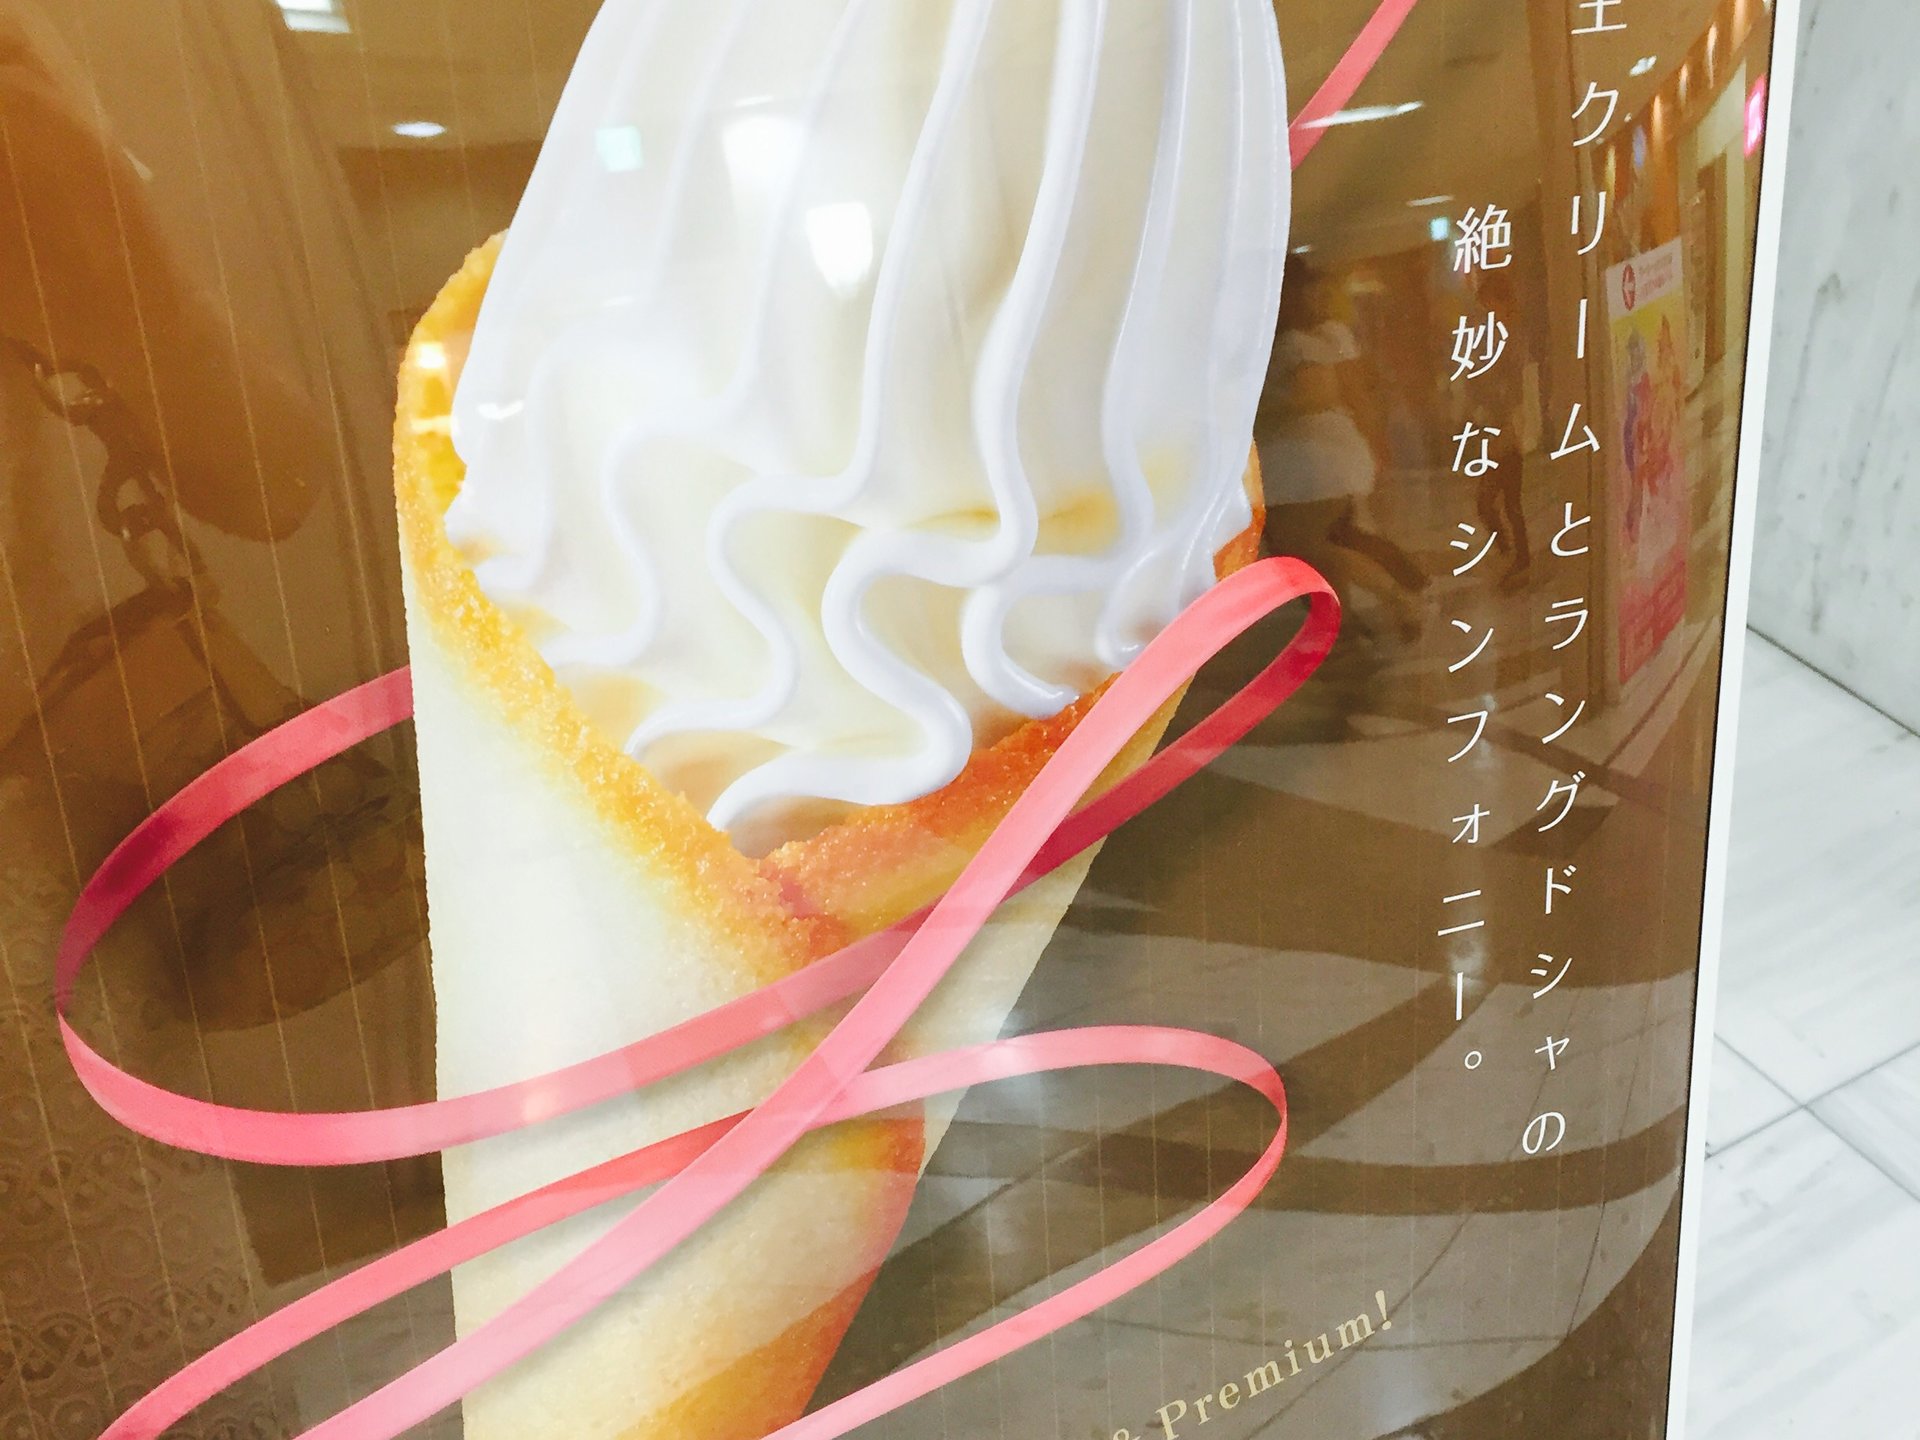 世界最高峰のソフトクリーム「クレミア」が食べられる「カフェラミル」でおしゃれランチ♡